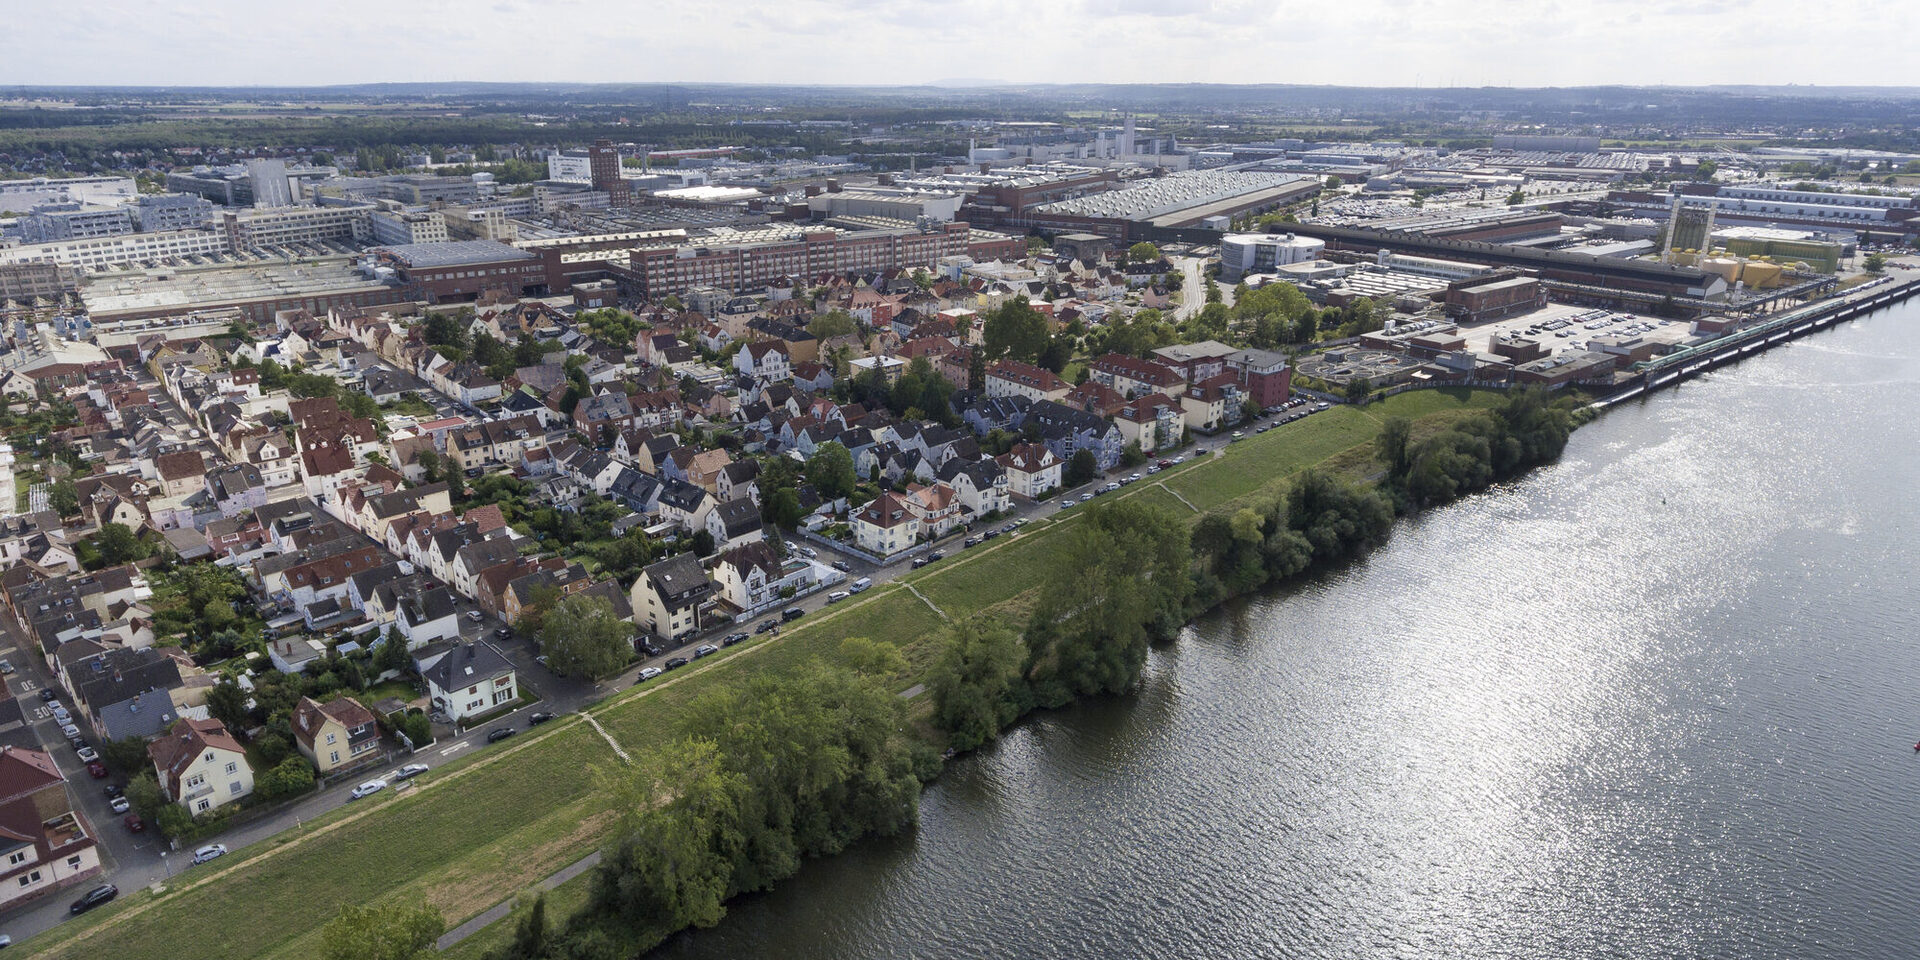 Luftaufnahme von Rüsselsheim am Main, im Hintergrund das Opel-Werk